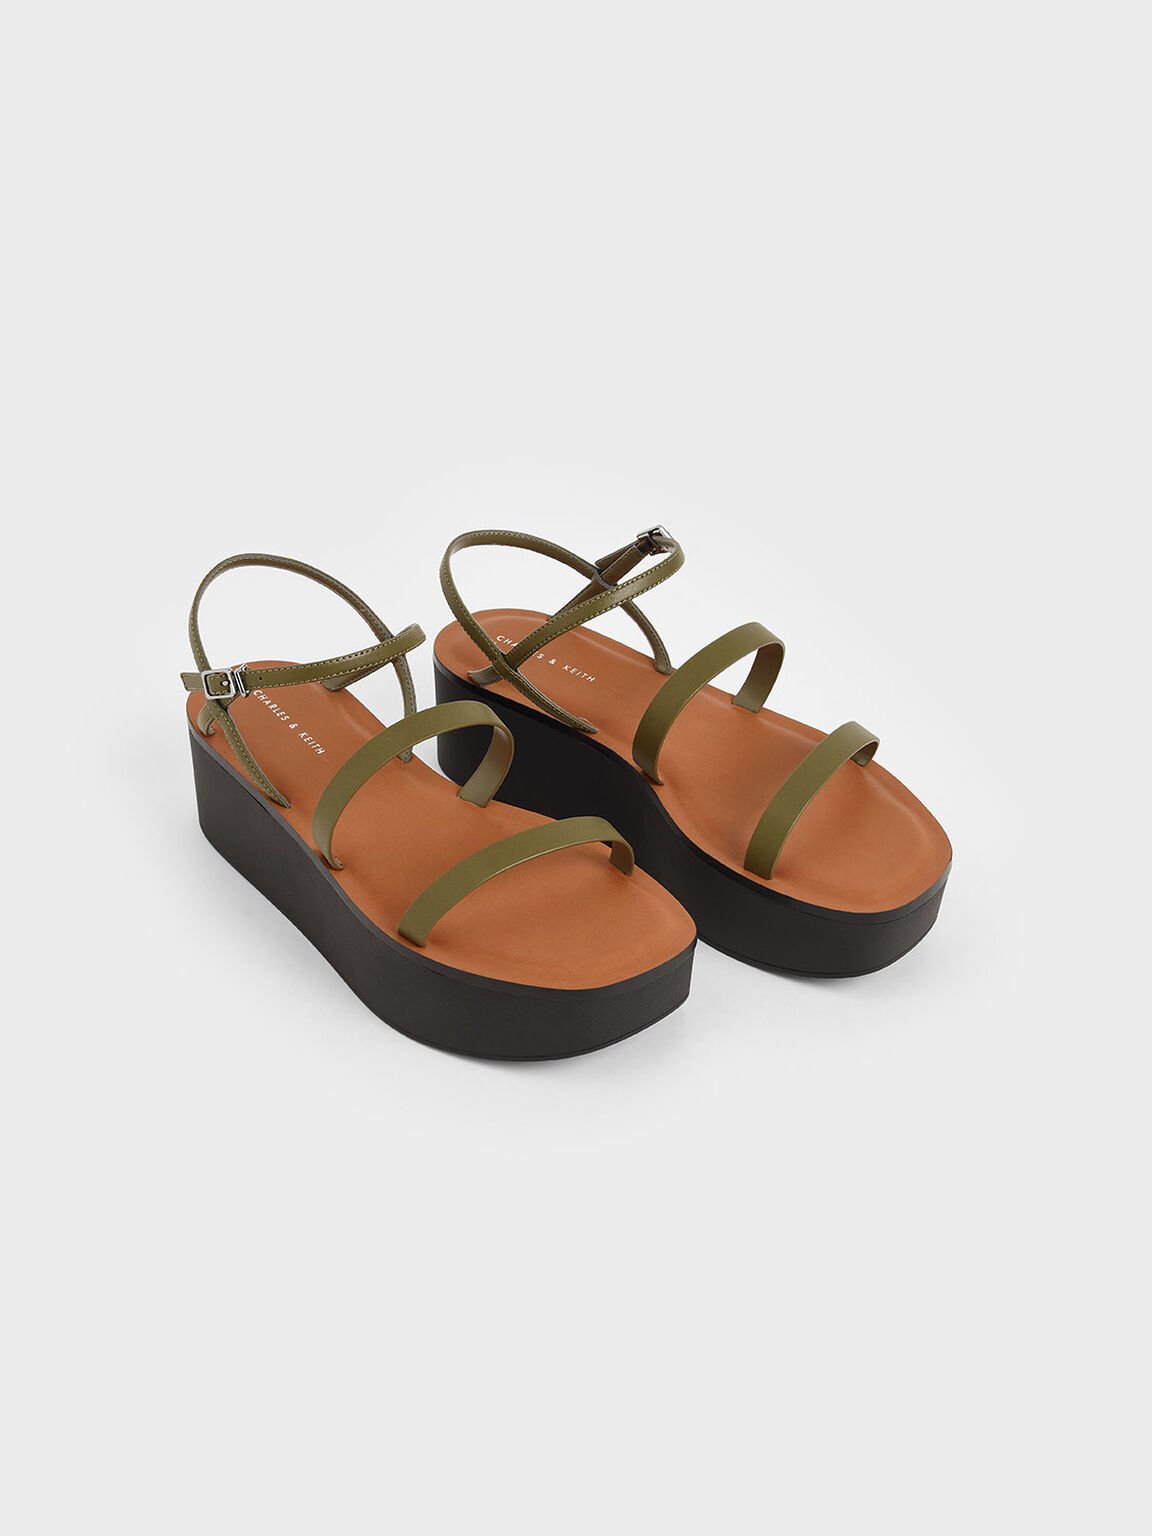 Strappy Flatform Sandals, Olive, hi-res